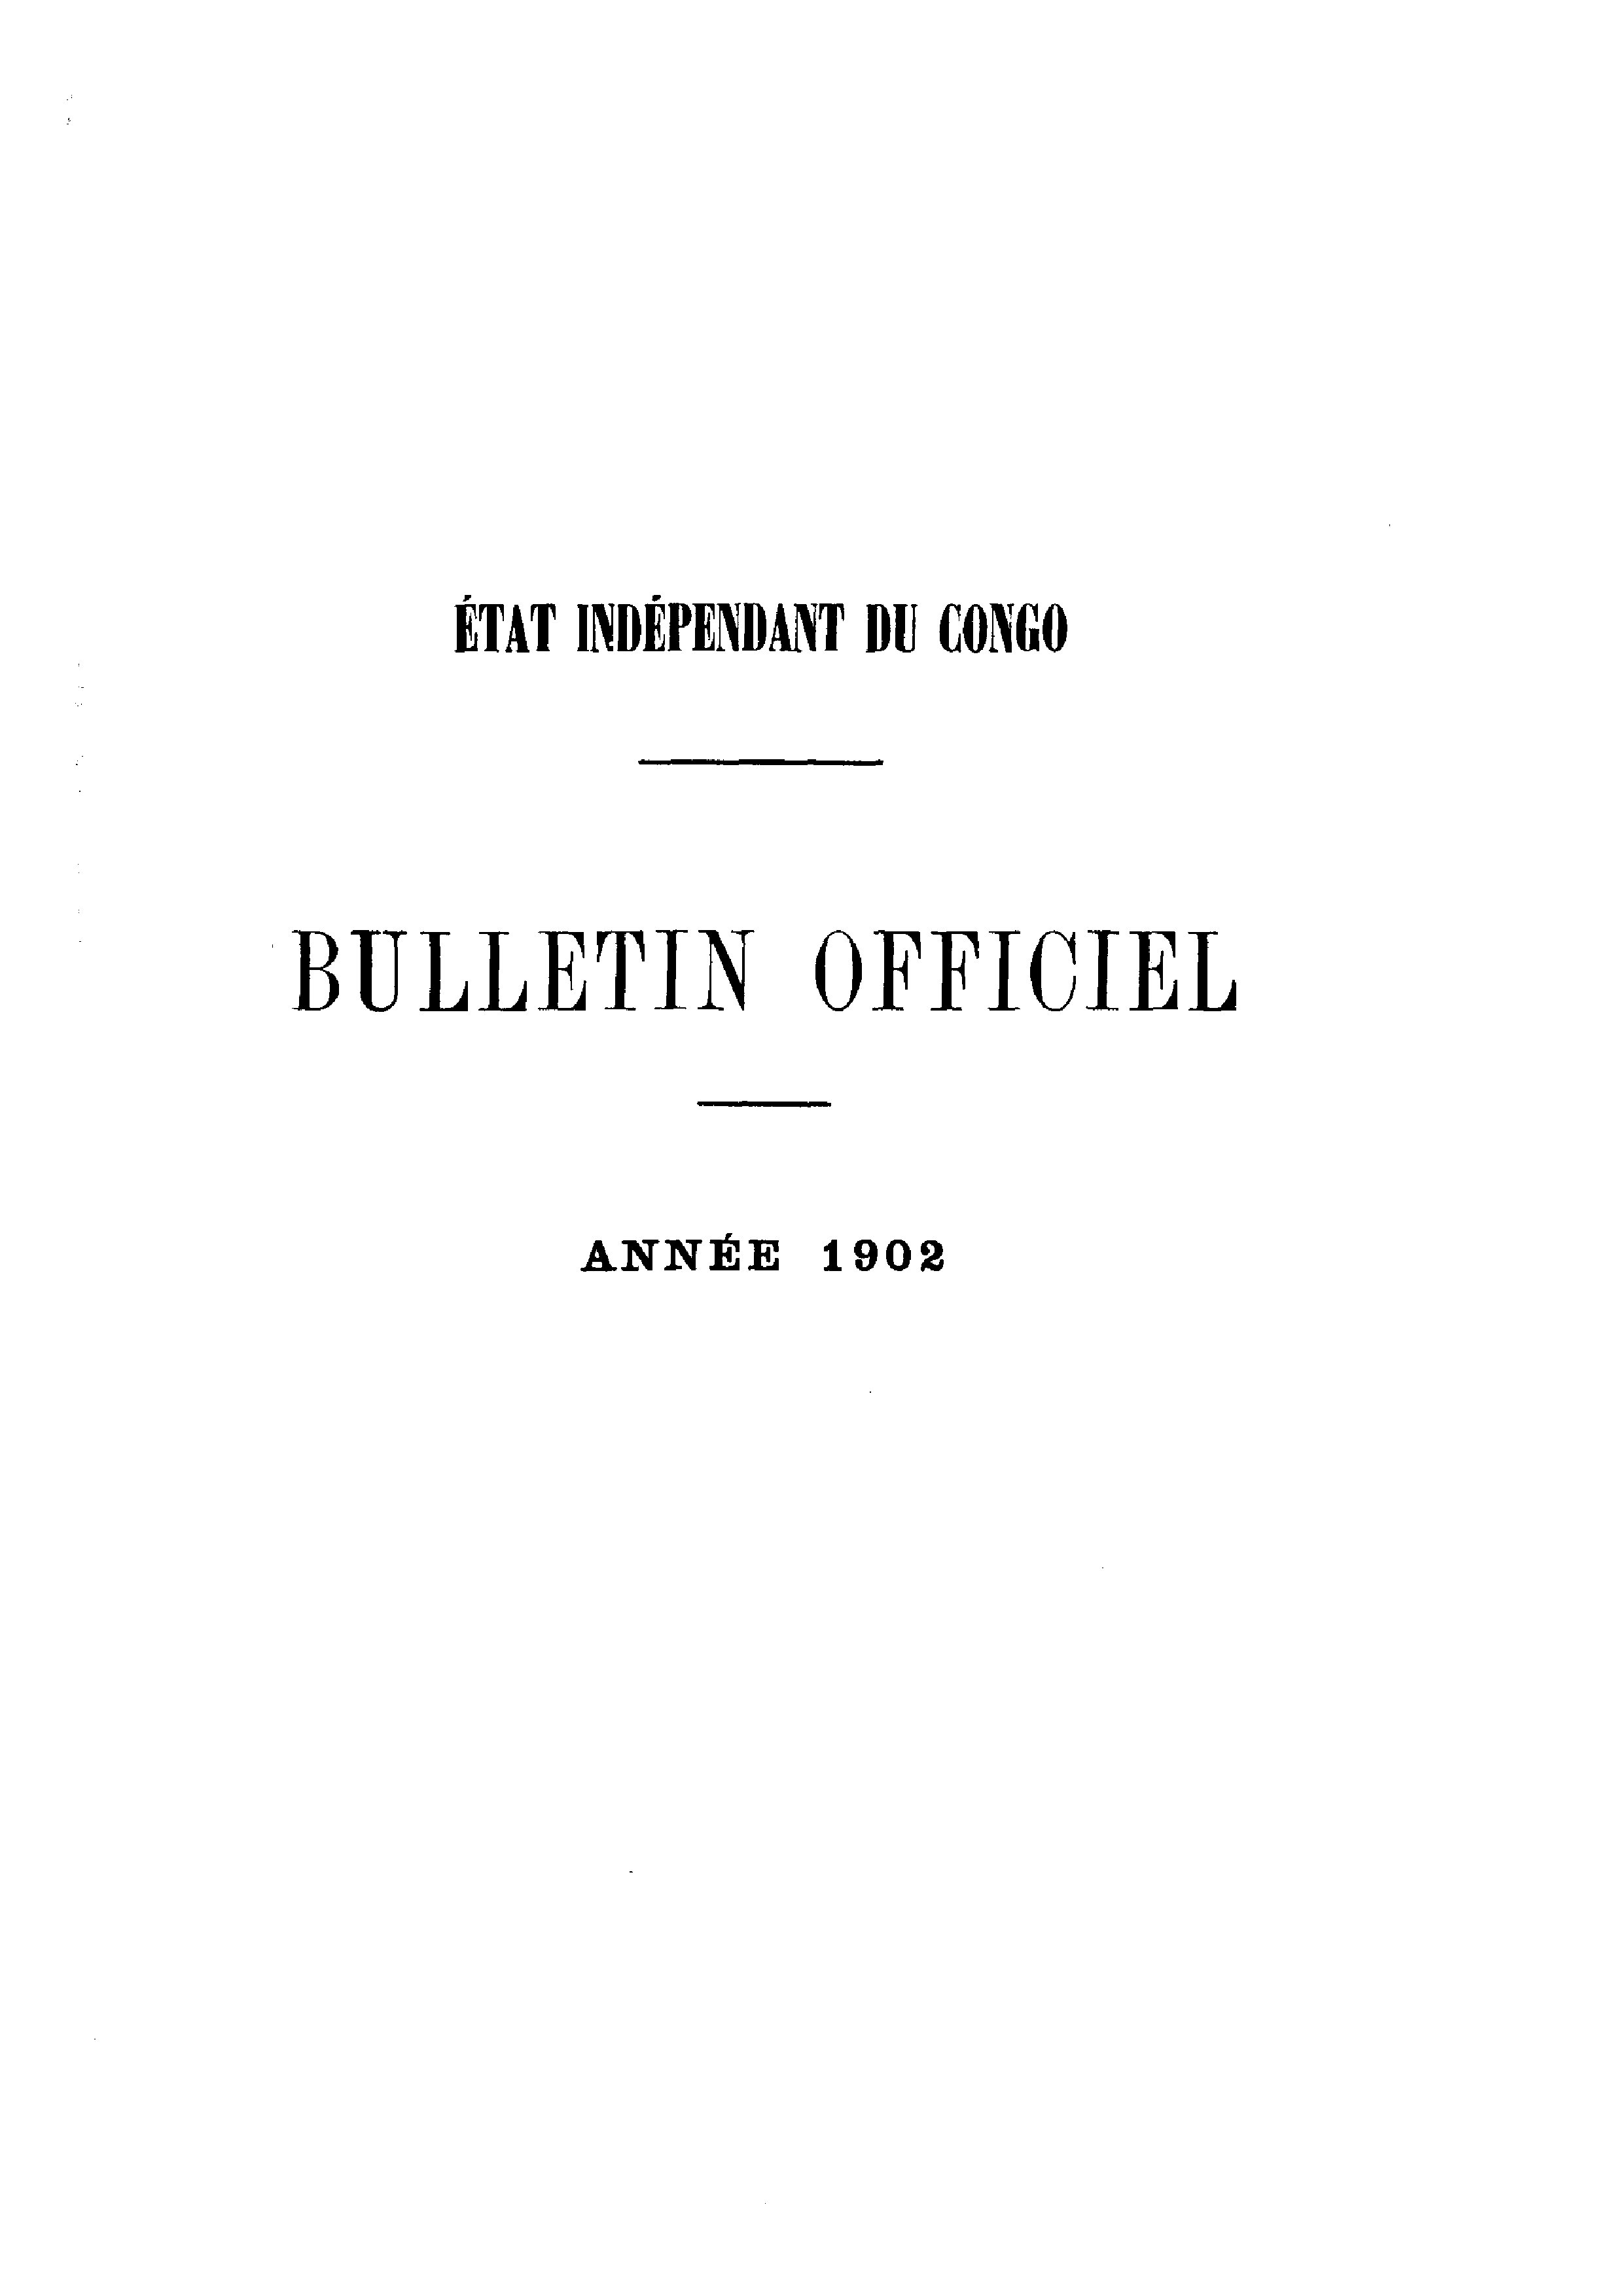 Book cover 202106132417: Etat Indépendant du Congo - roi Léopold II | Etat Indépendant du Congo - Bulletin Officiel – Année 1902